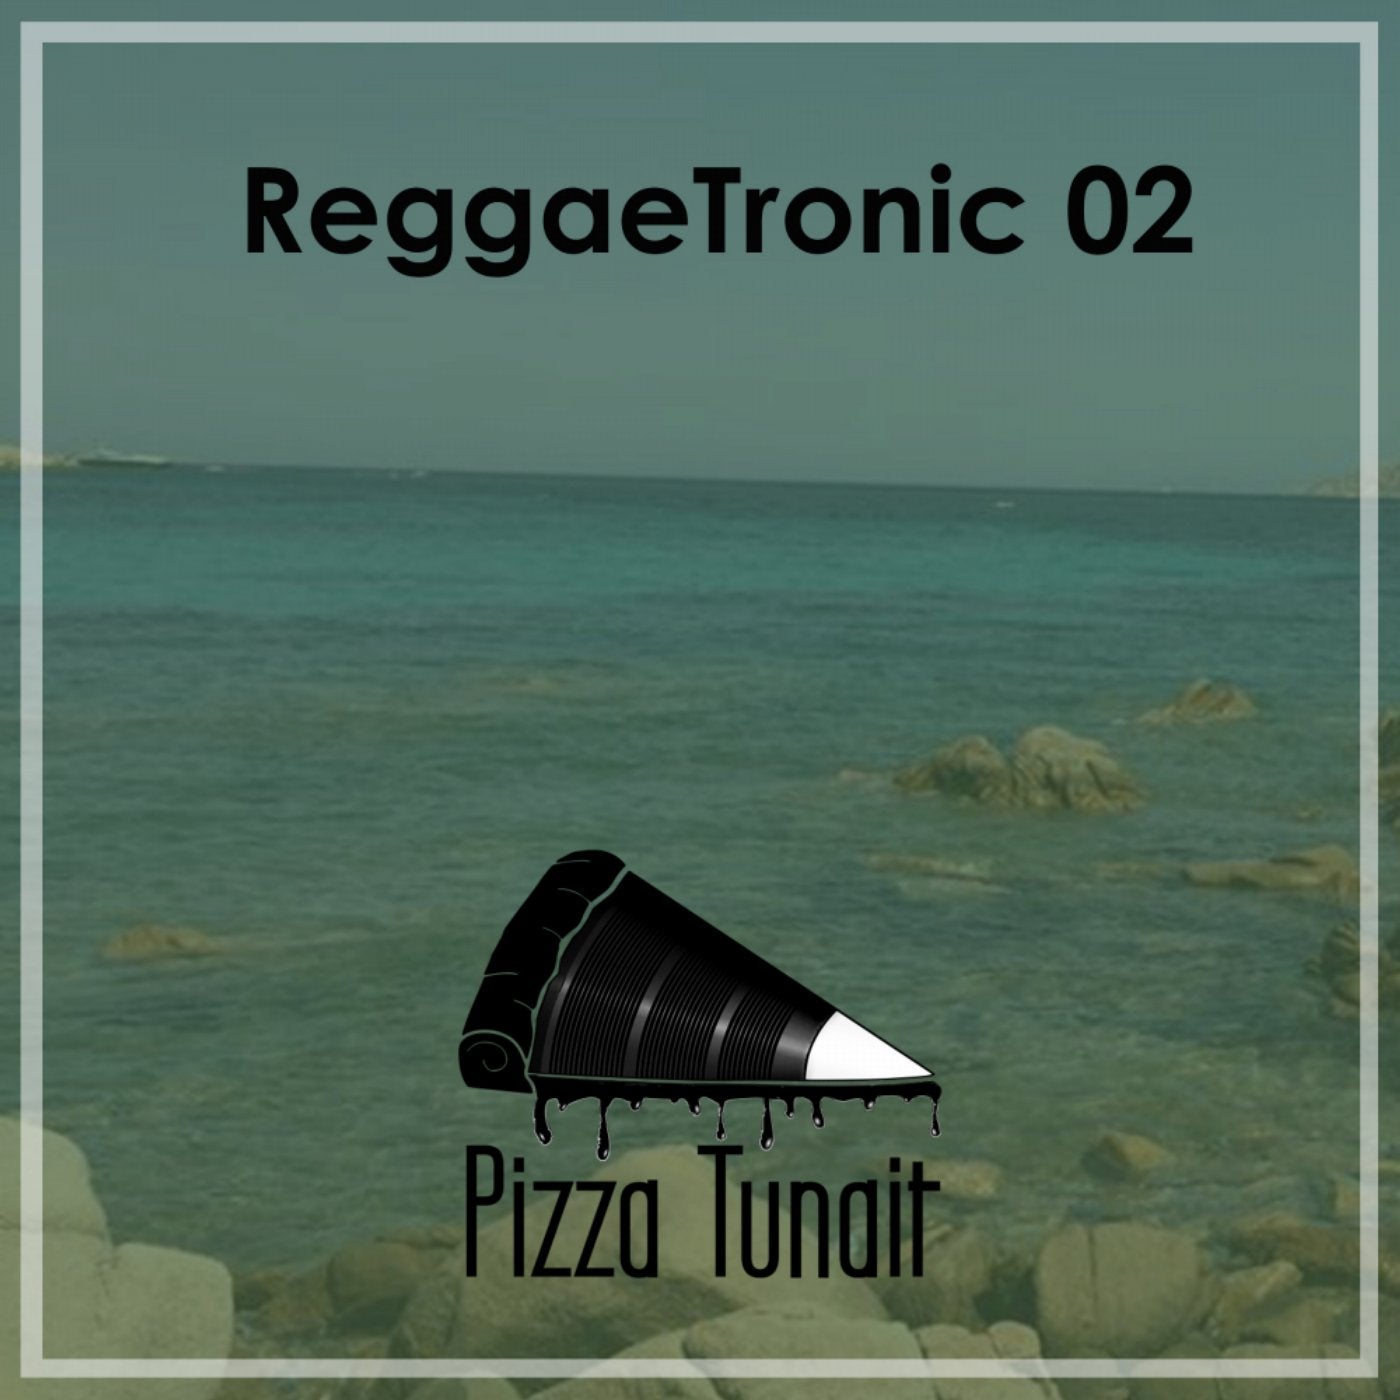 Reggaetronic 02